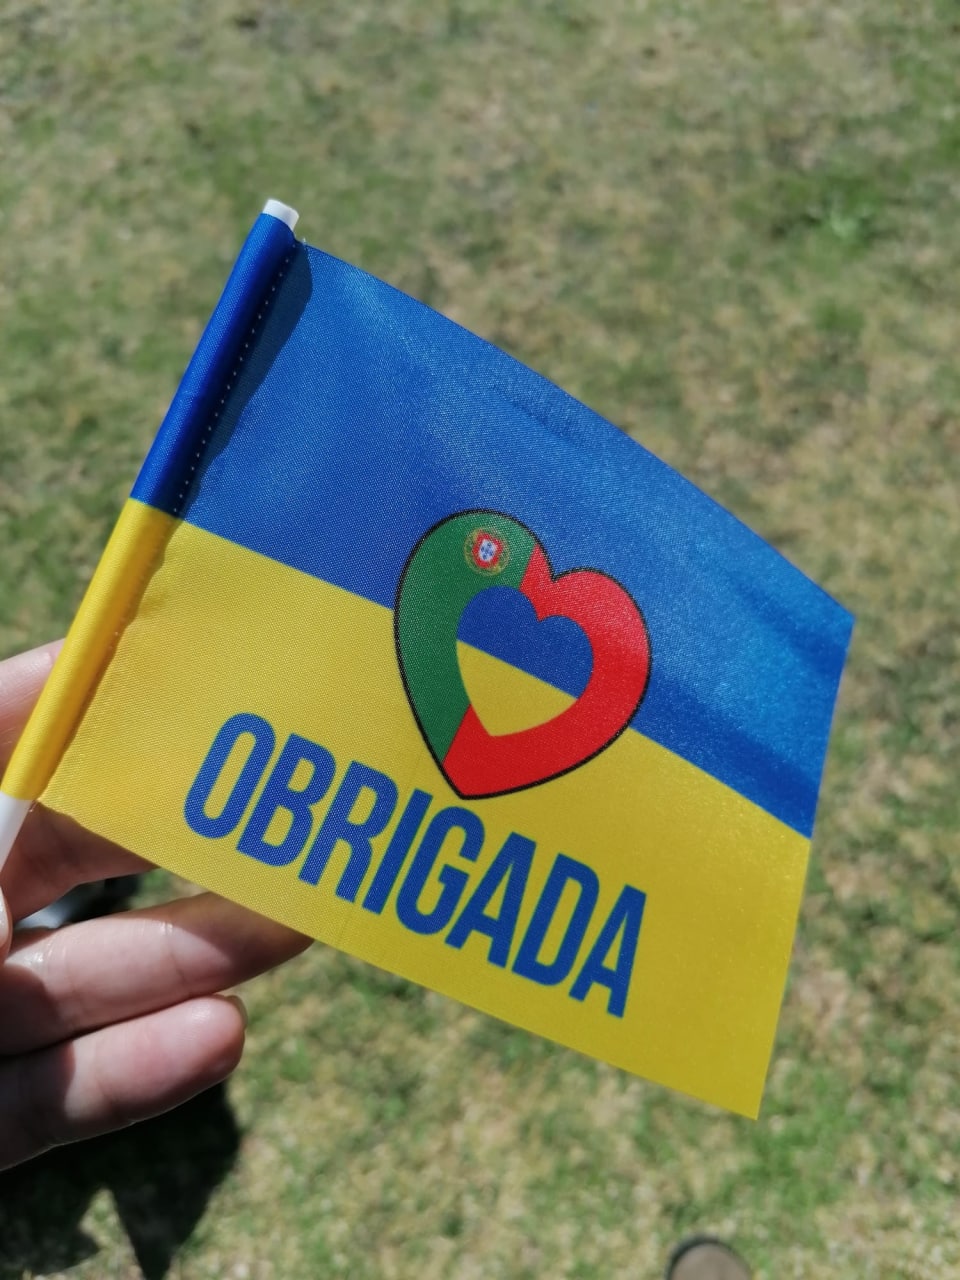 Українці дякують португальцям синьо-жовтими прапорцями із серцем у кольорах португальського прапора та словом 